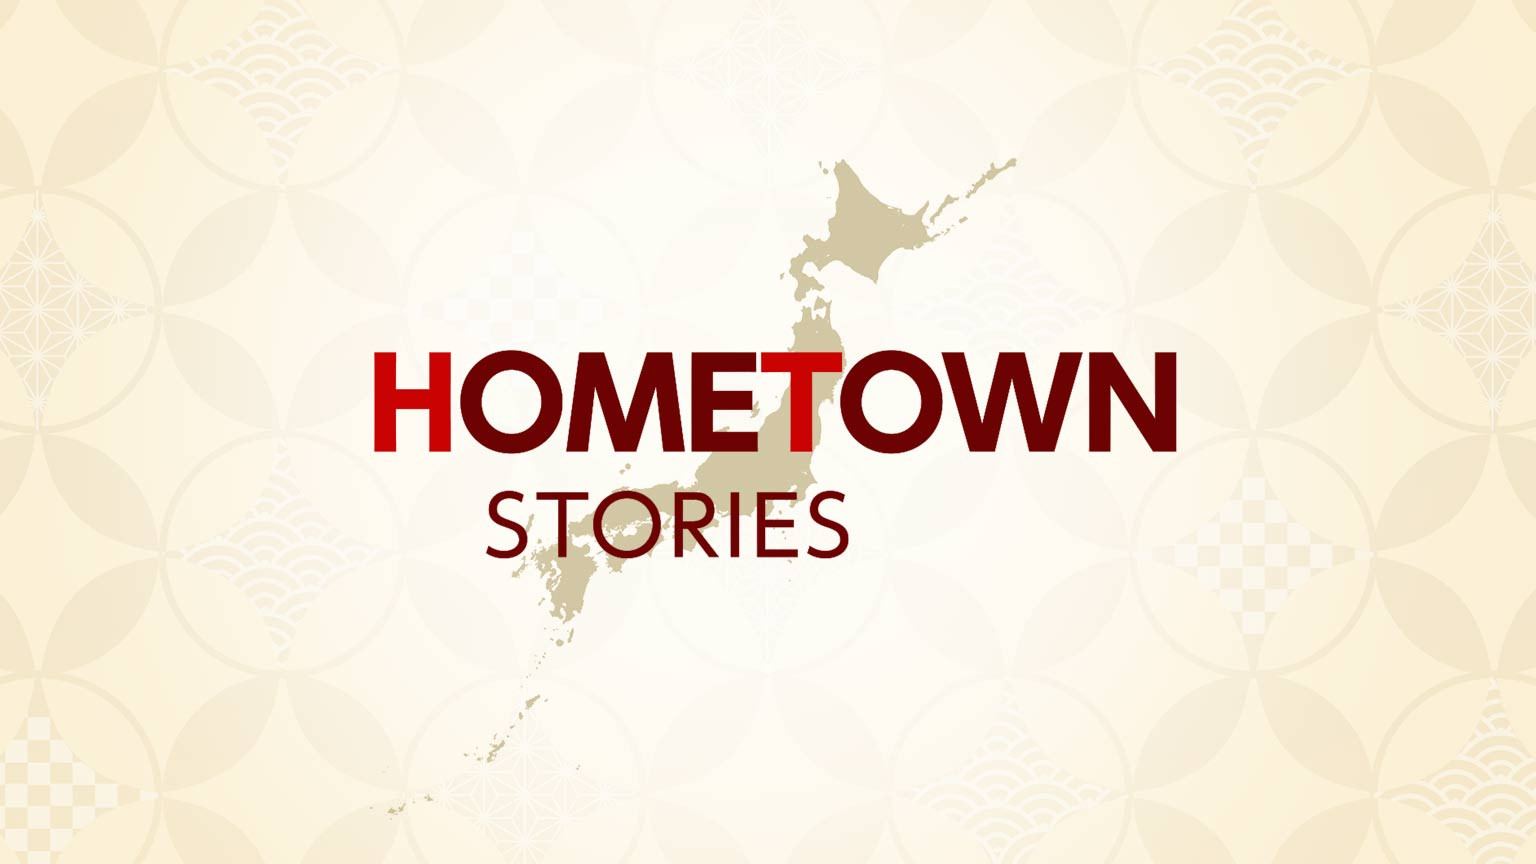 নিজ শহরের গল্প
Hometown Stories